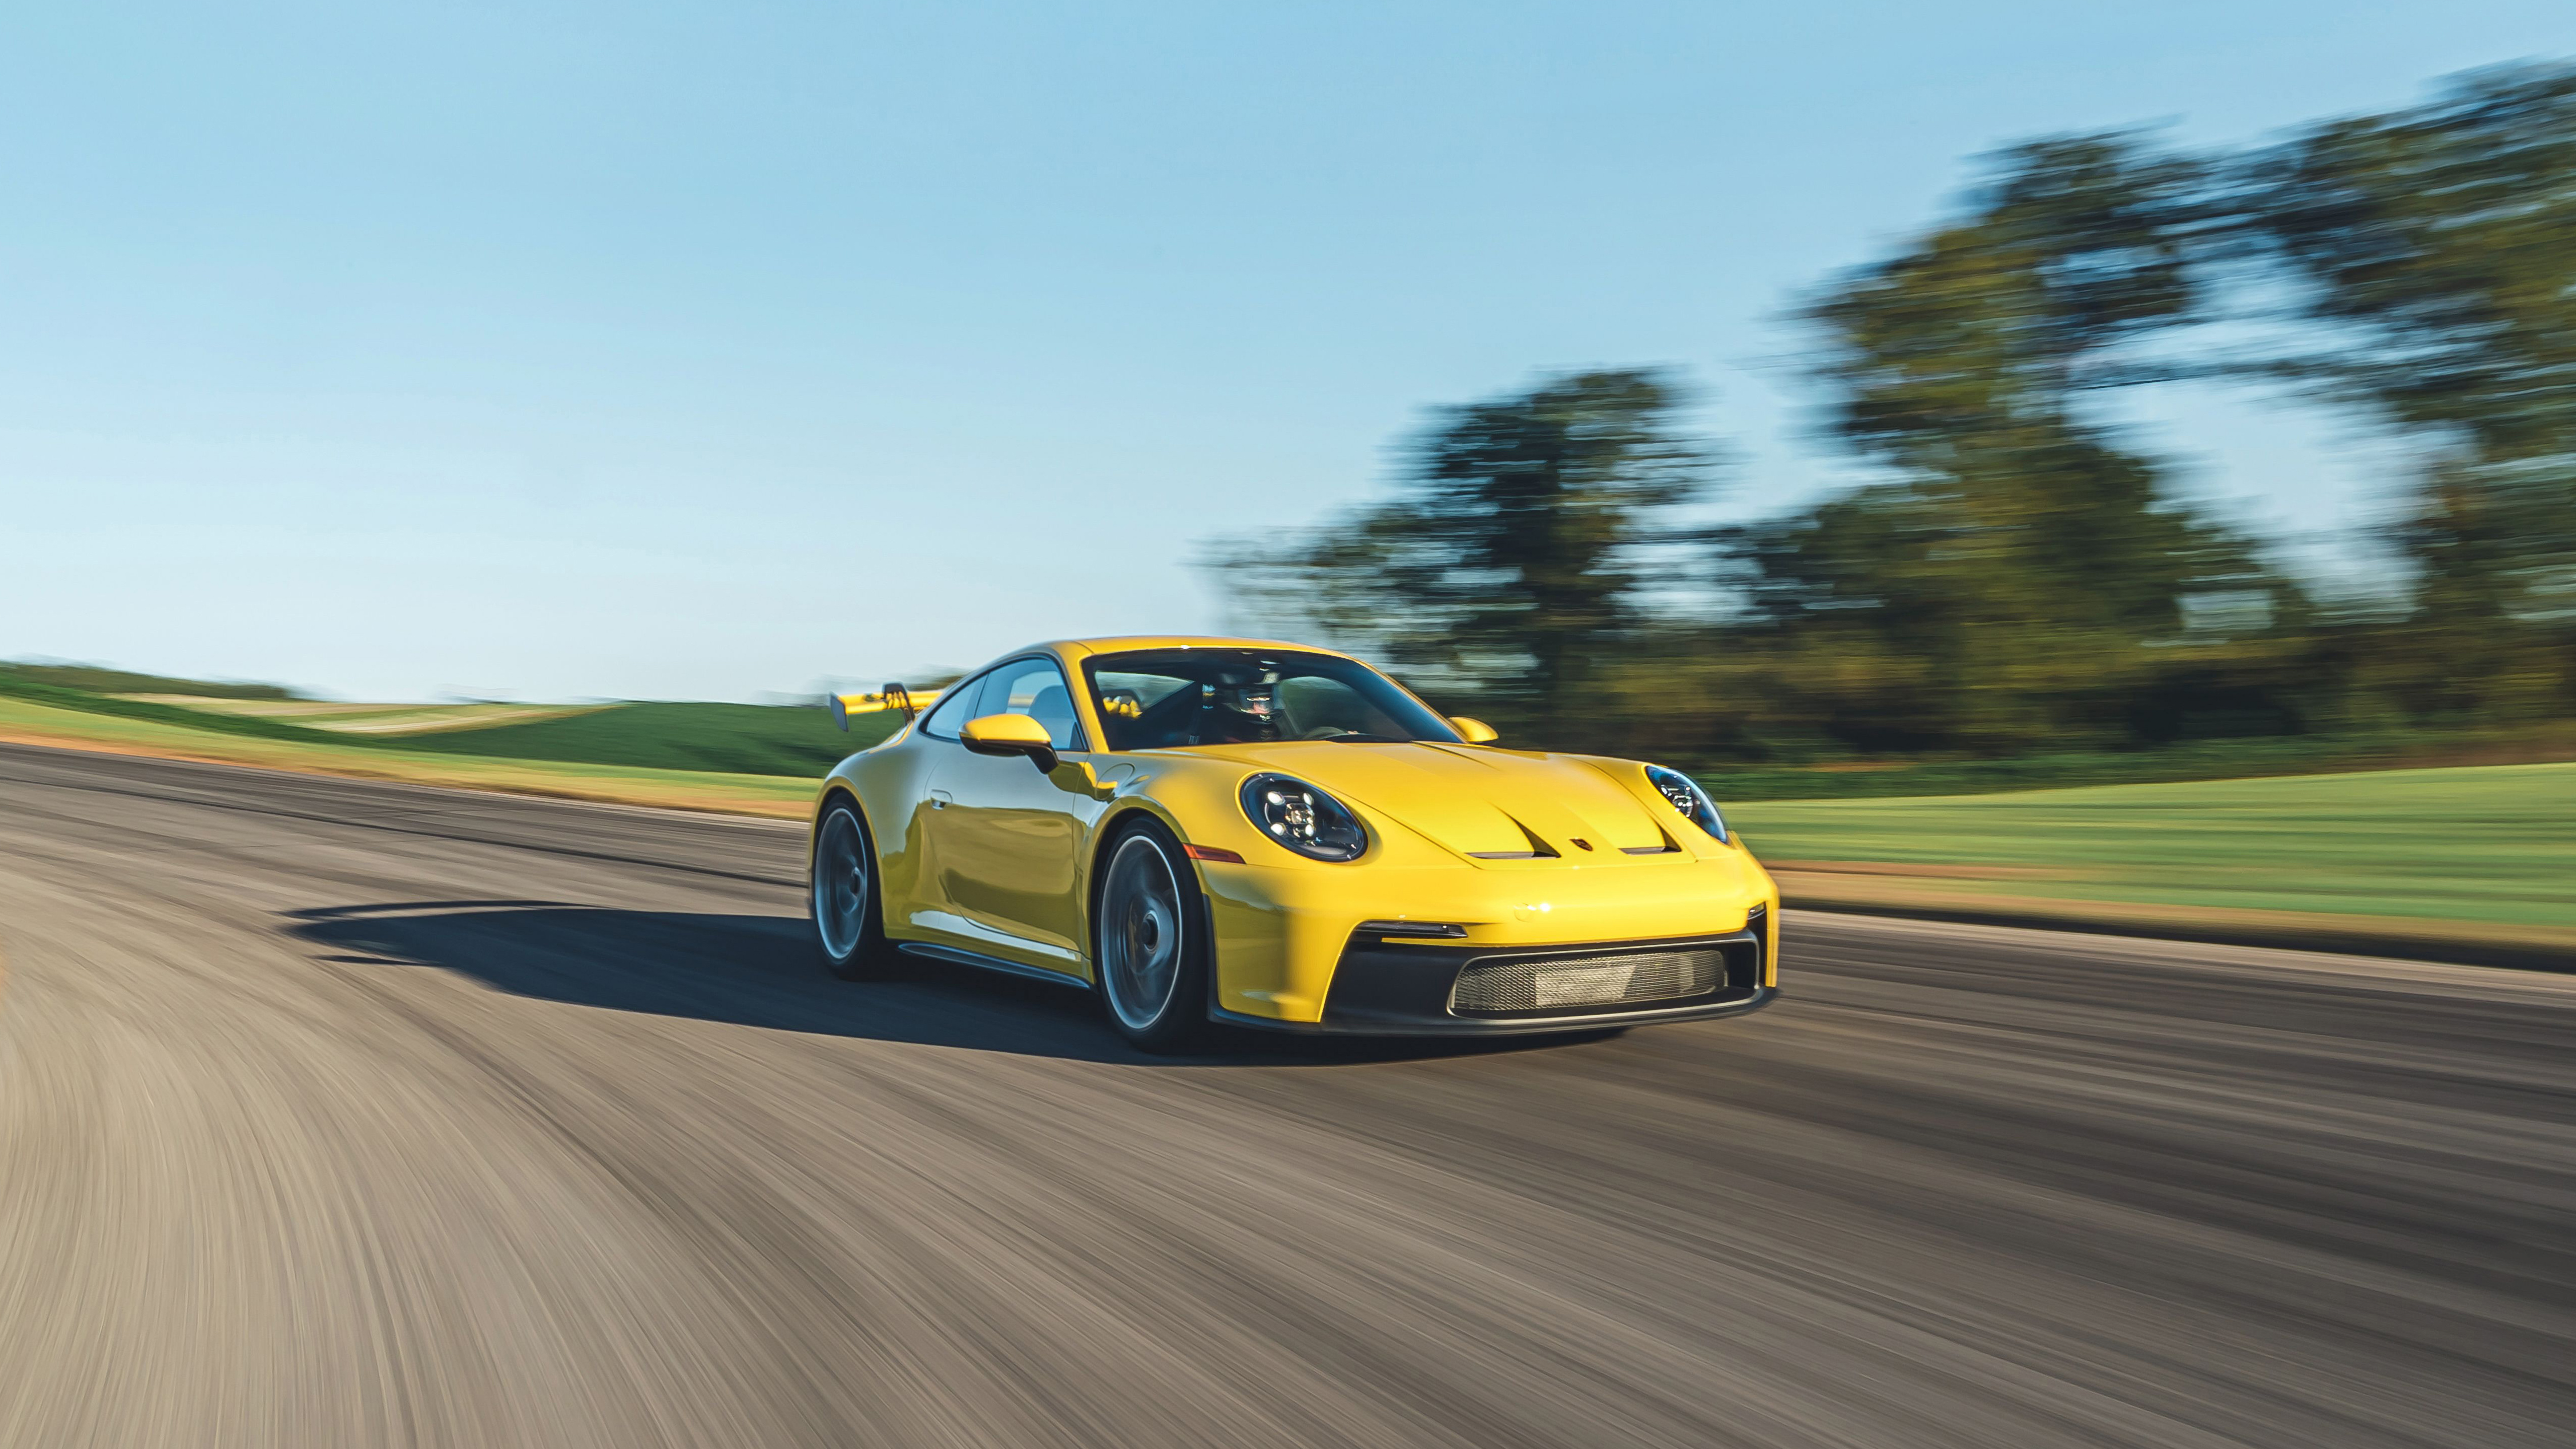 Ярко-желтый Porsche 911 мчится по дороге